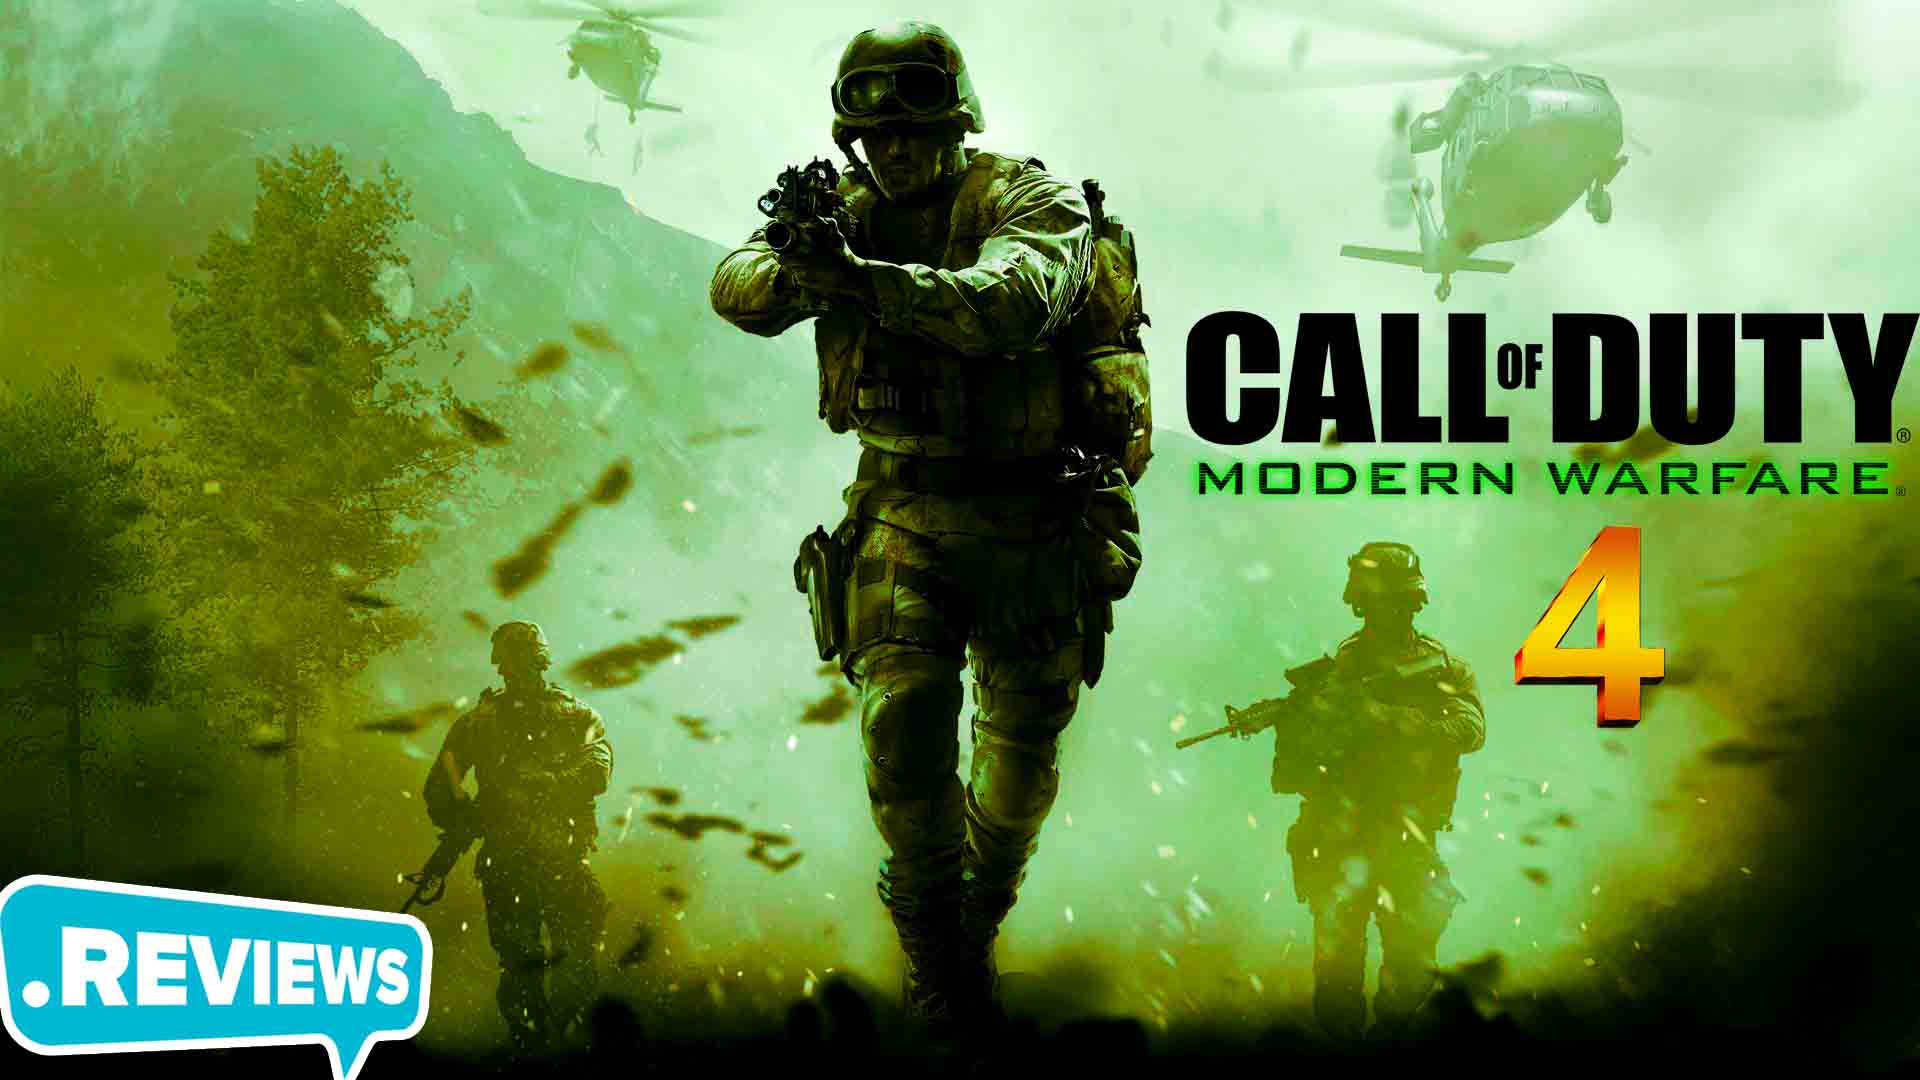 HÃ€NH Äá»˜NG - HÆ°á»›ng dáº«n táº£i vÃ  cÃ i Ä‘áº·t Call of Duty 4 Modern ... - 